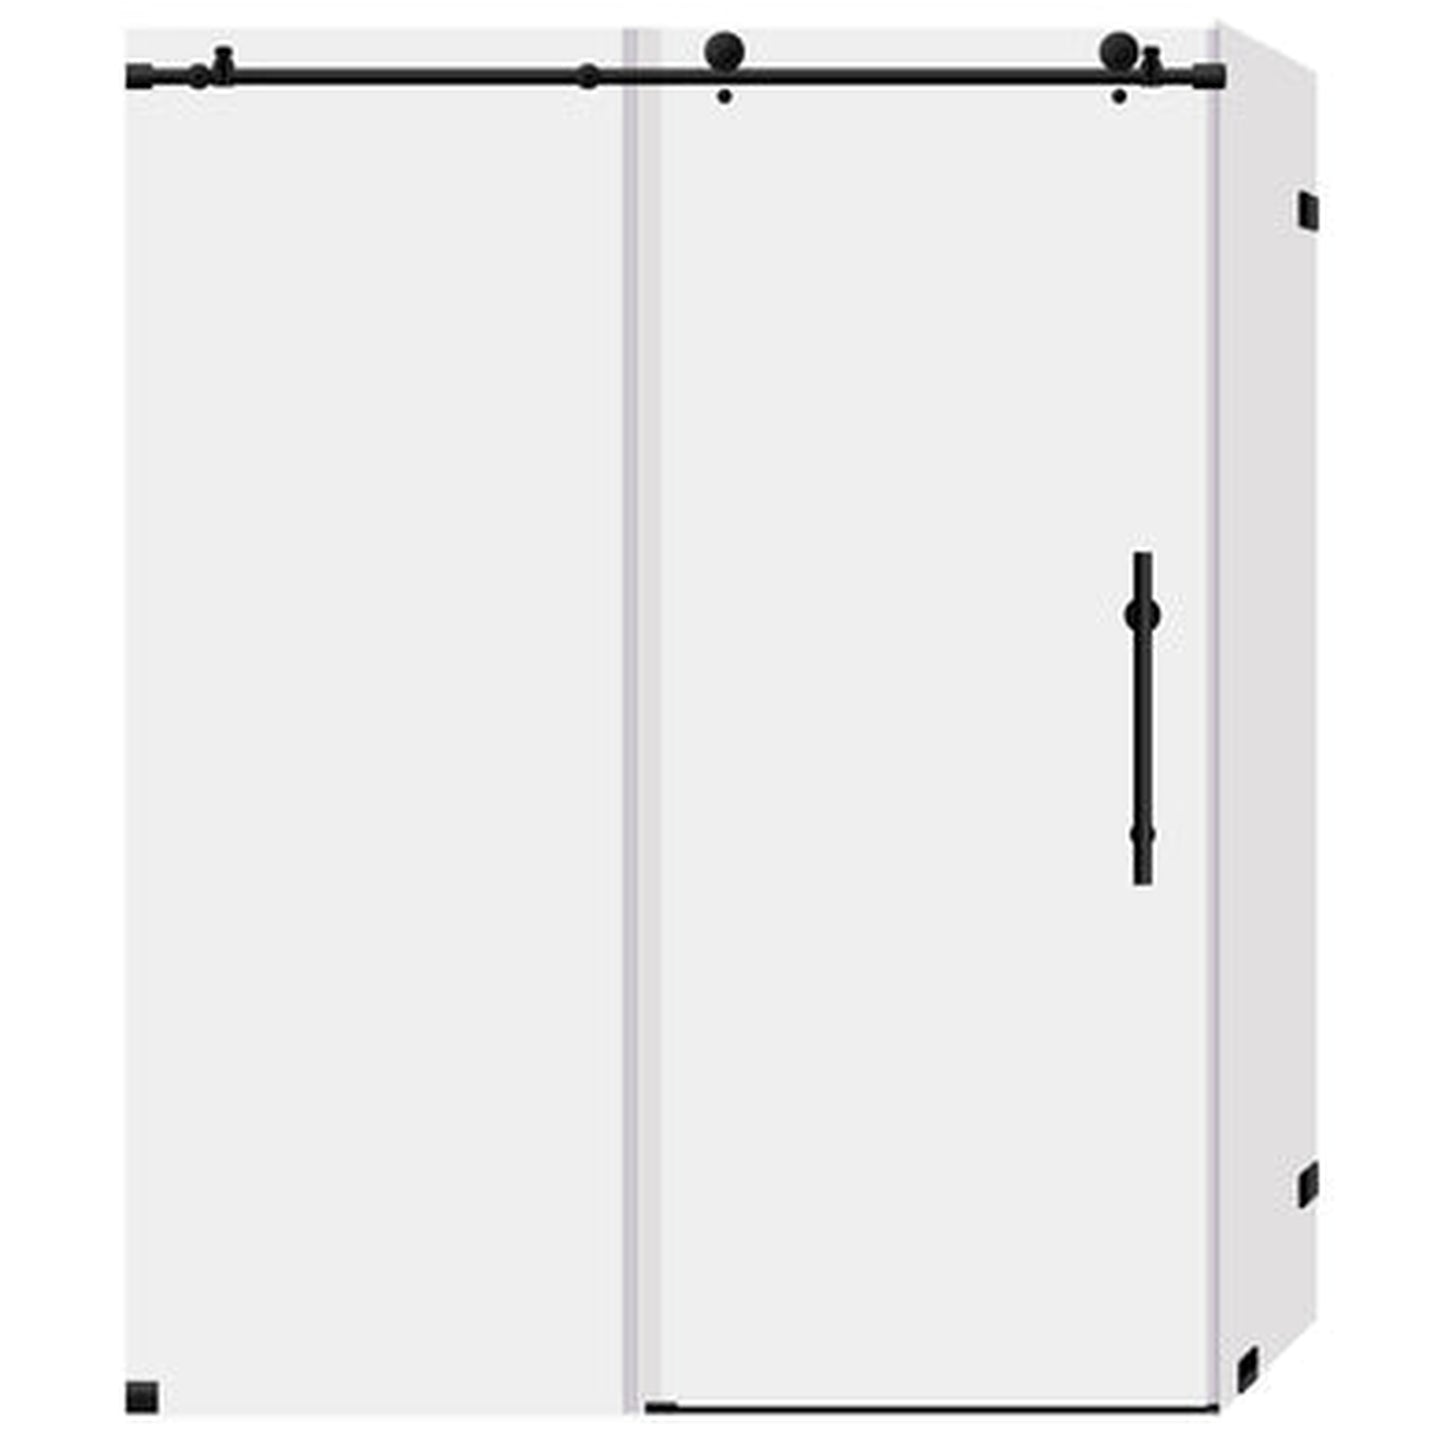 LessCare Ultra-C 56-60" x 76" x 34 1/2" Matte Black Sliding Shower Enclosure